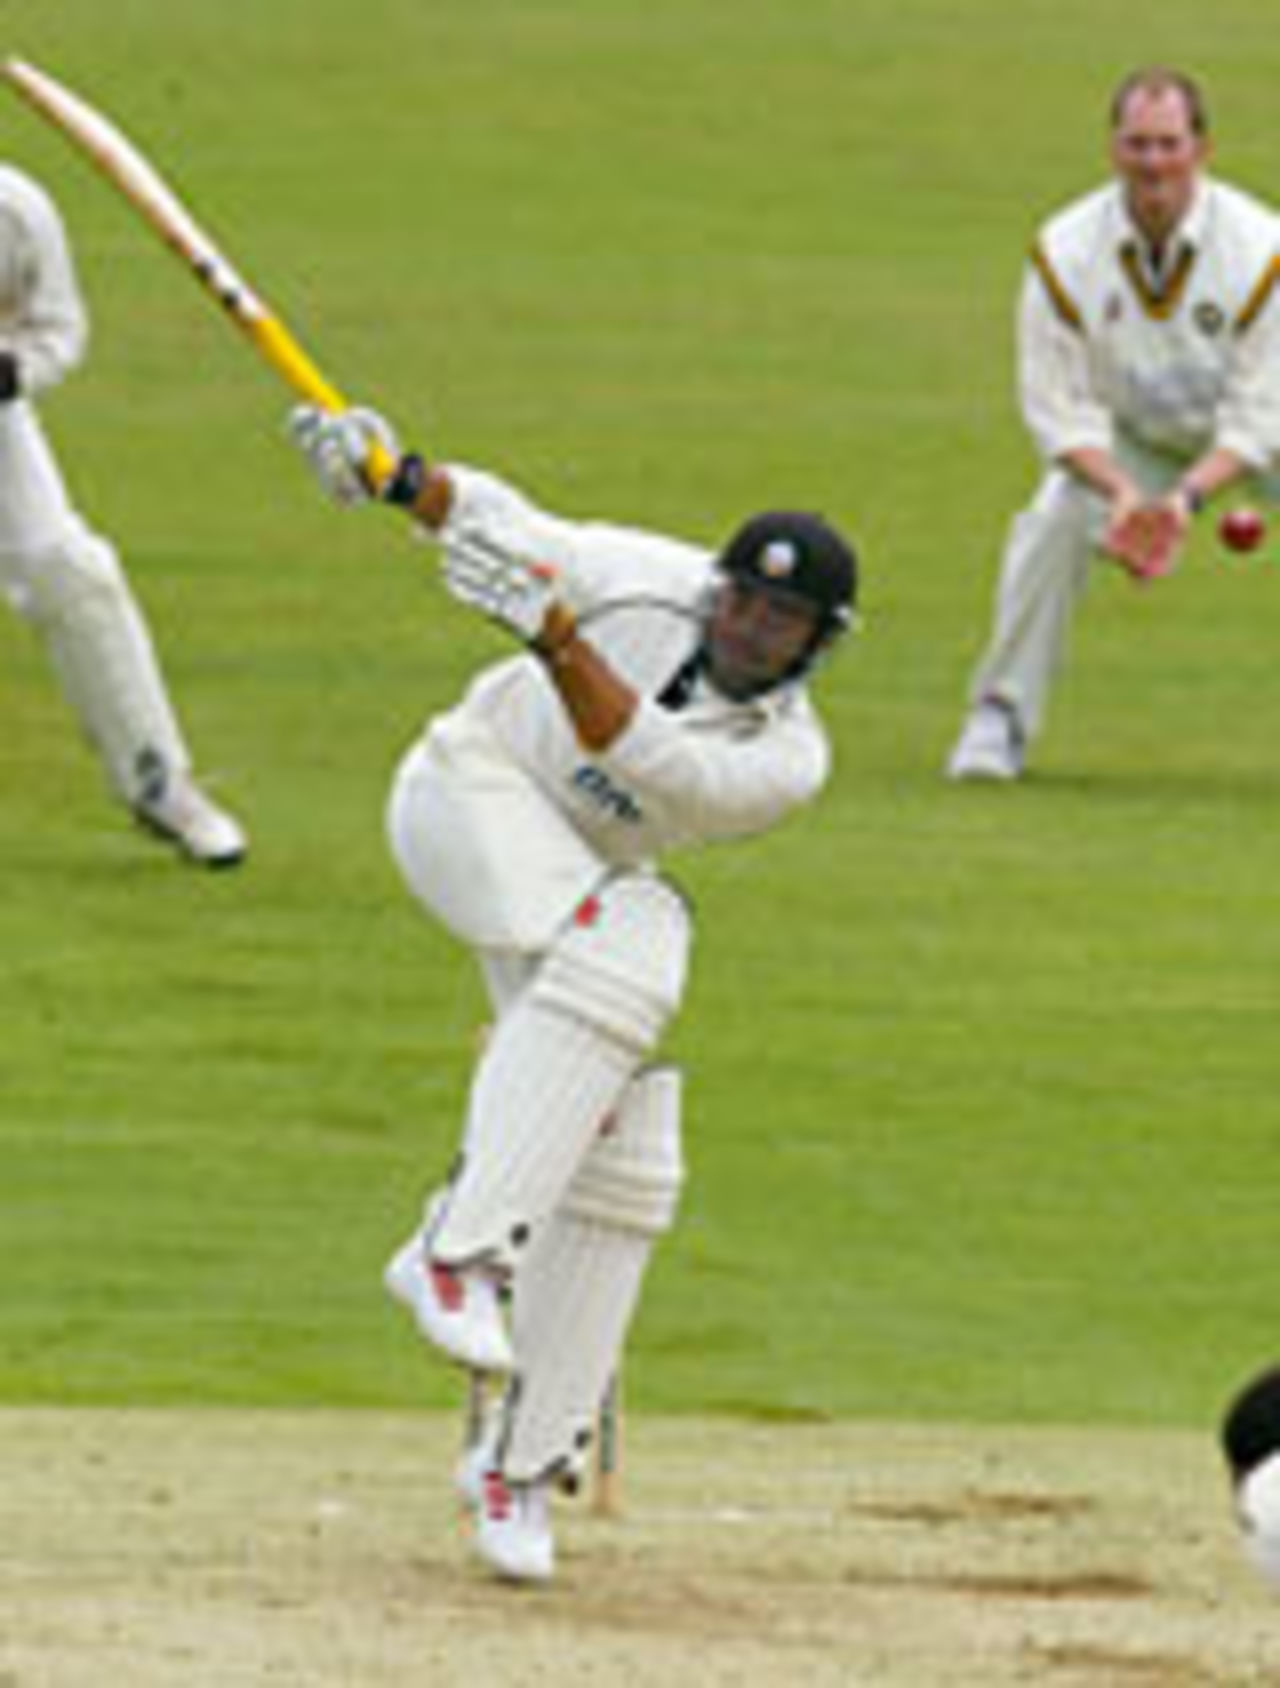 Scott Newman, Surrey v Northants, The Oval, April 28, 2004